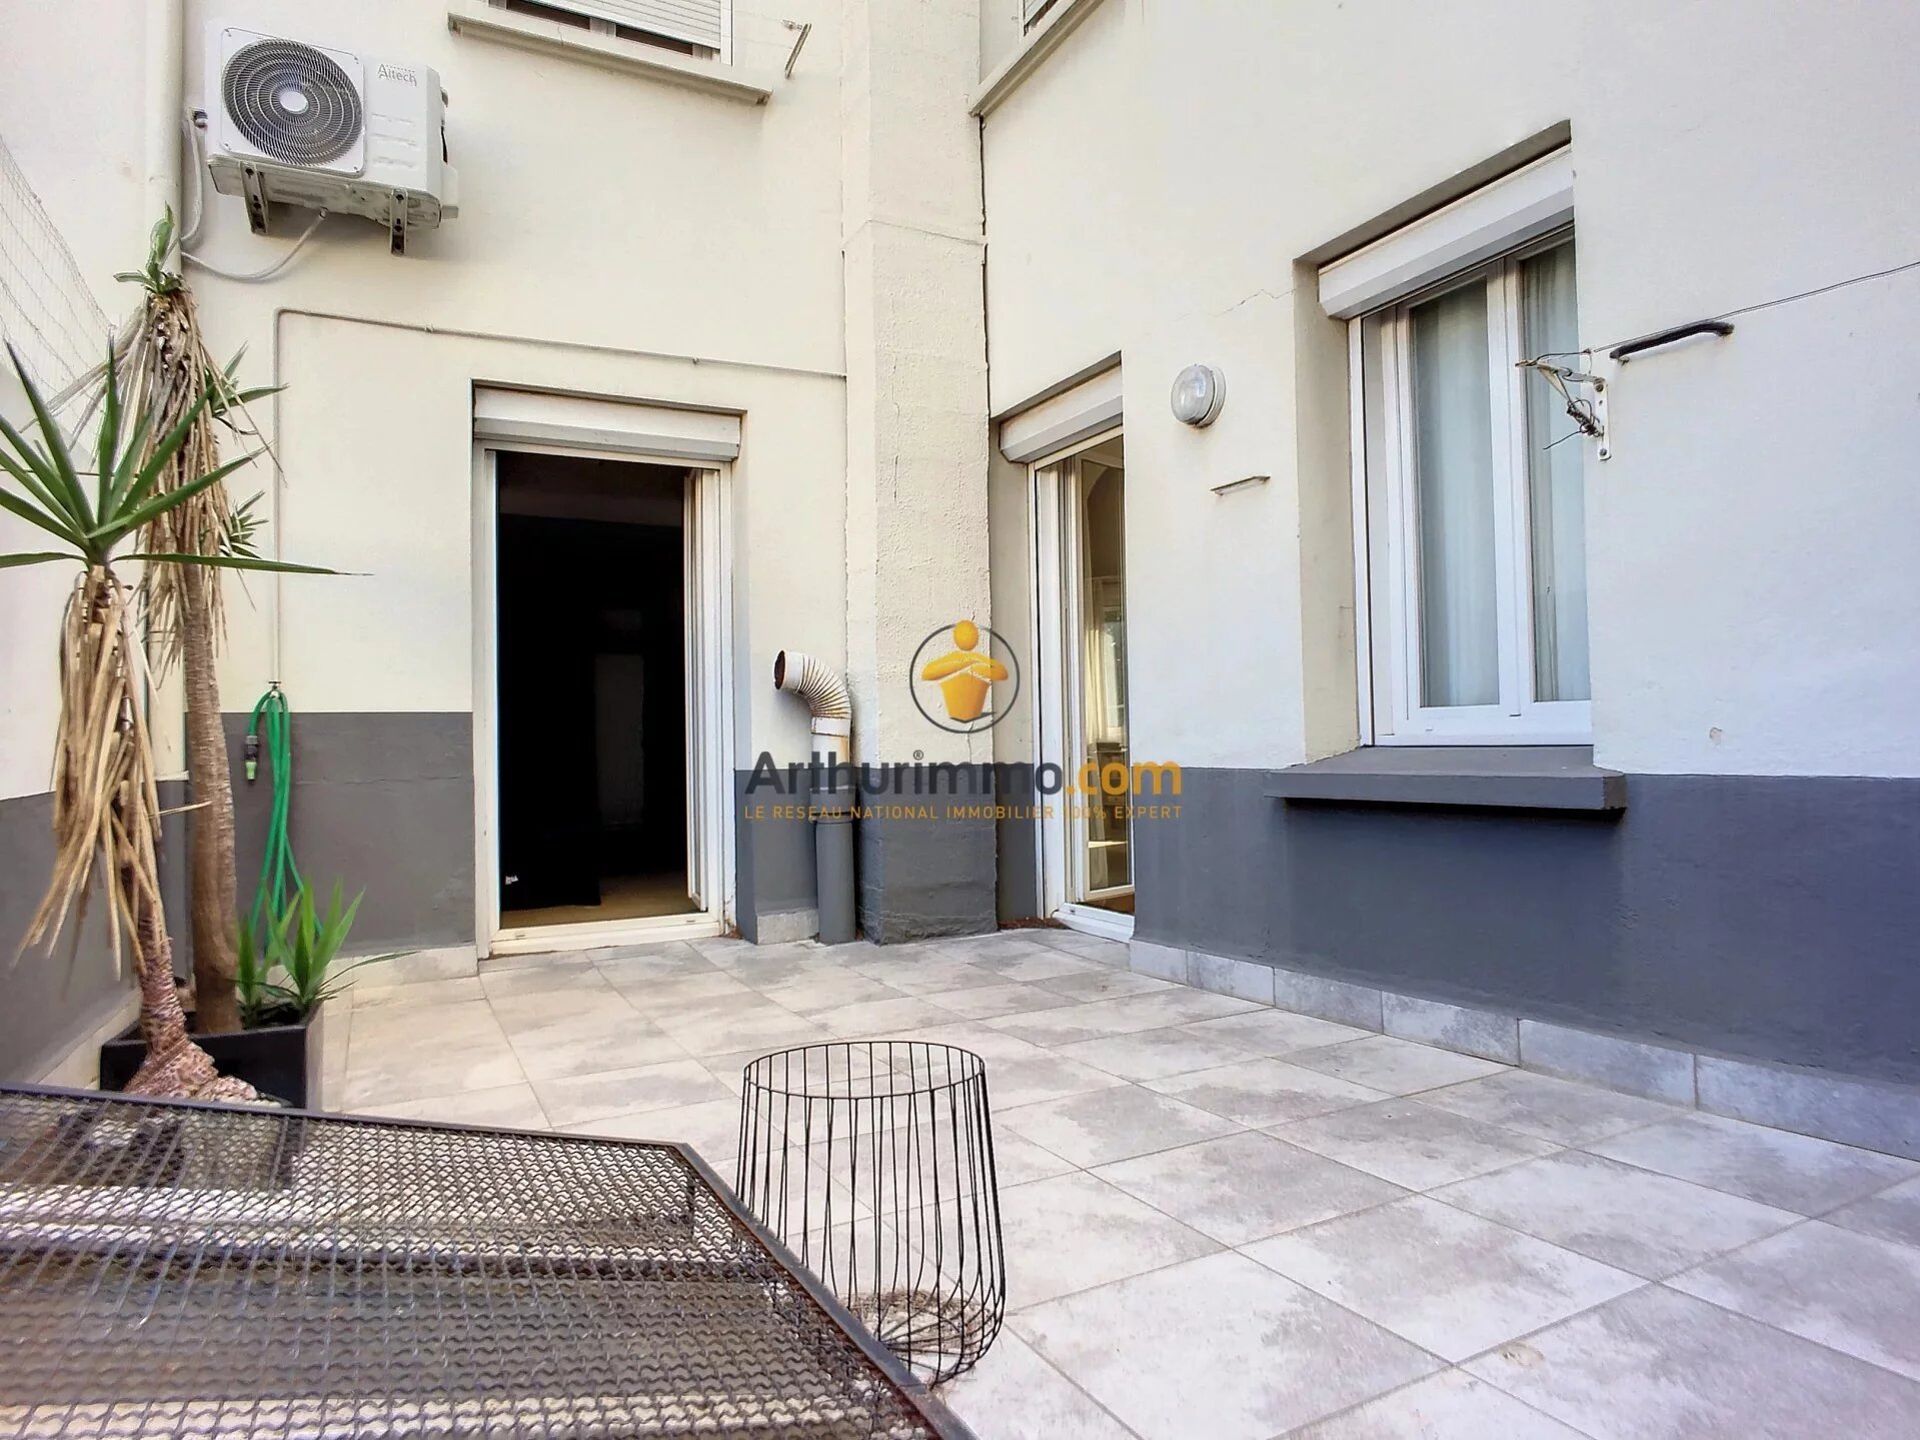 Vente Appartement 122m² 4 Pièces à Perpignan (66000) - Arthurimmo